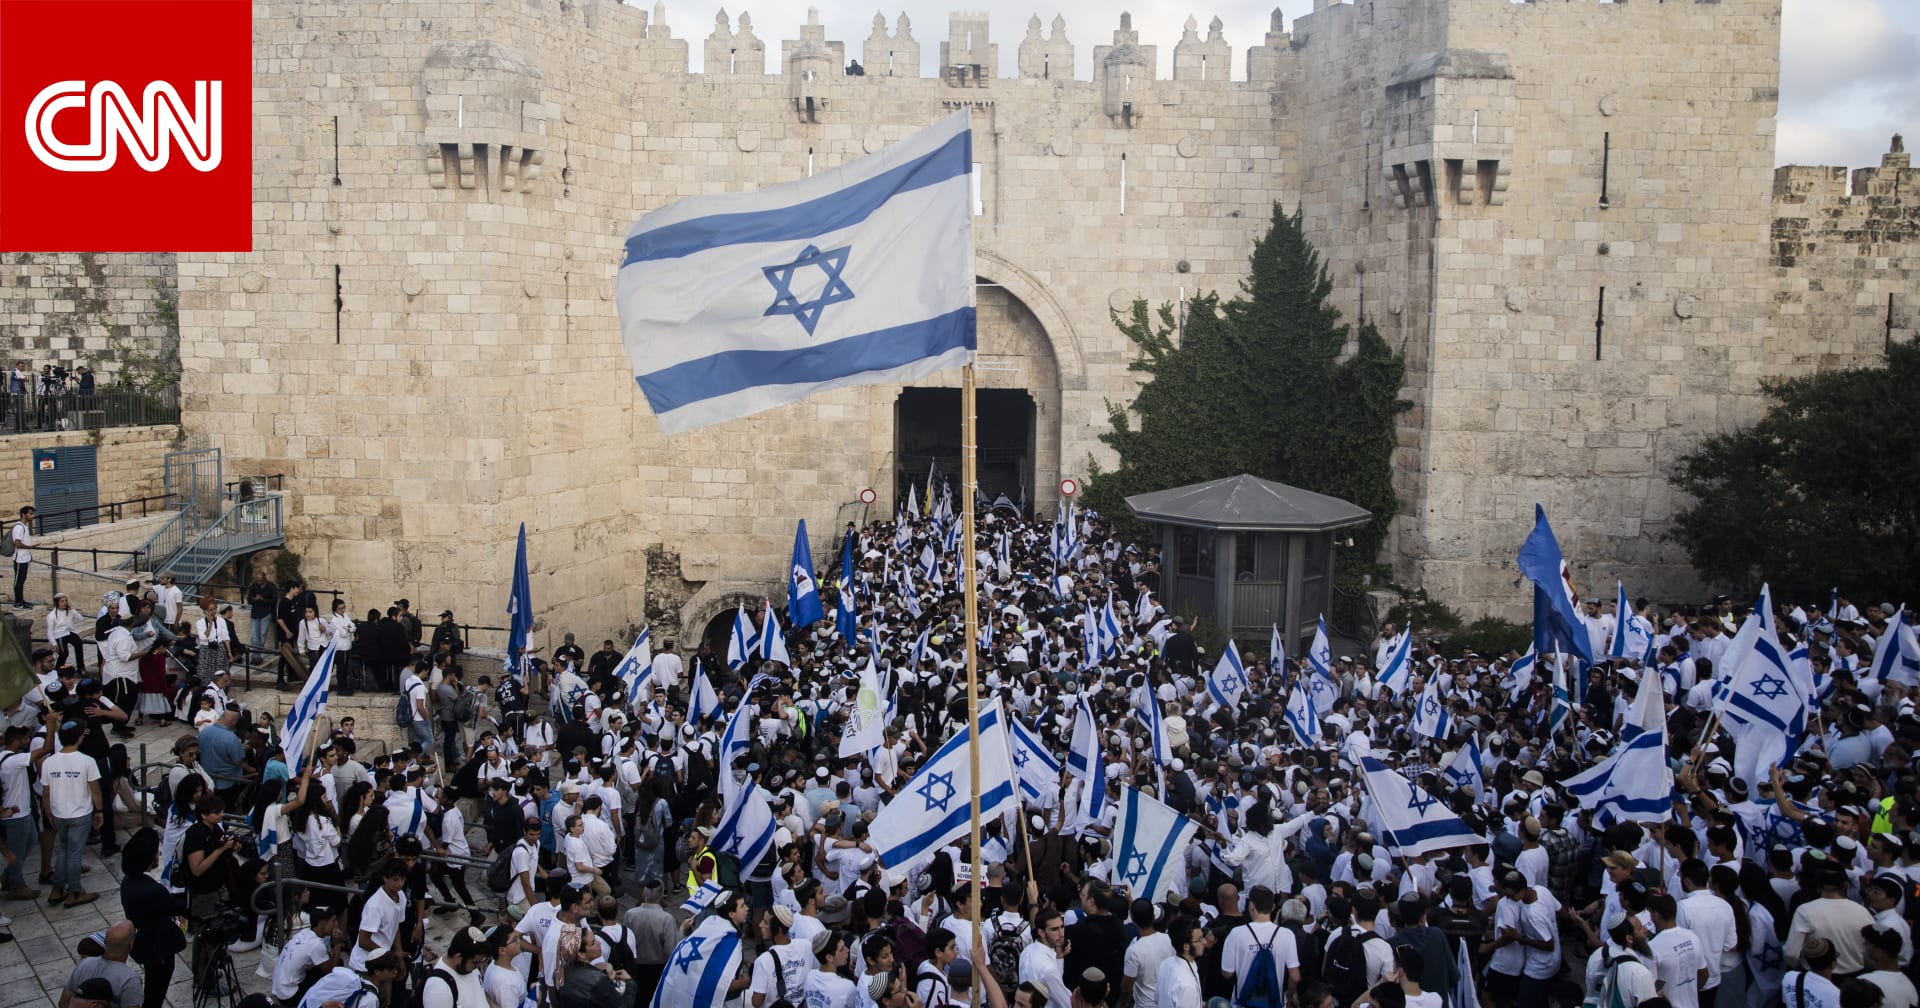 “مسيرة الأعلام” المثيرة للجدل تجذب آلاف الإسرائيليين إلى البلدة القديمة في القدس